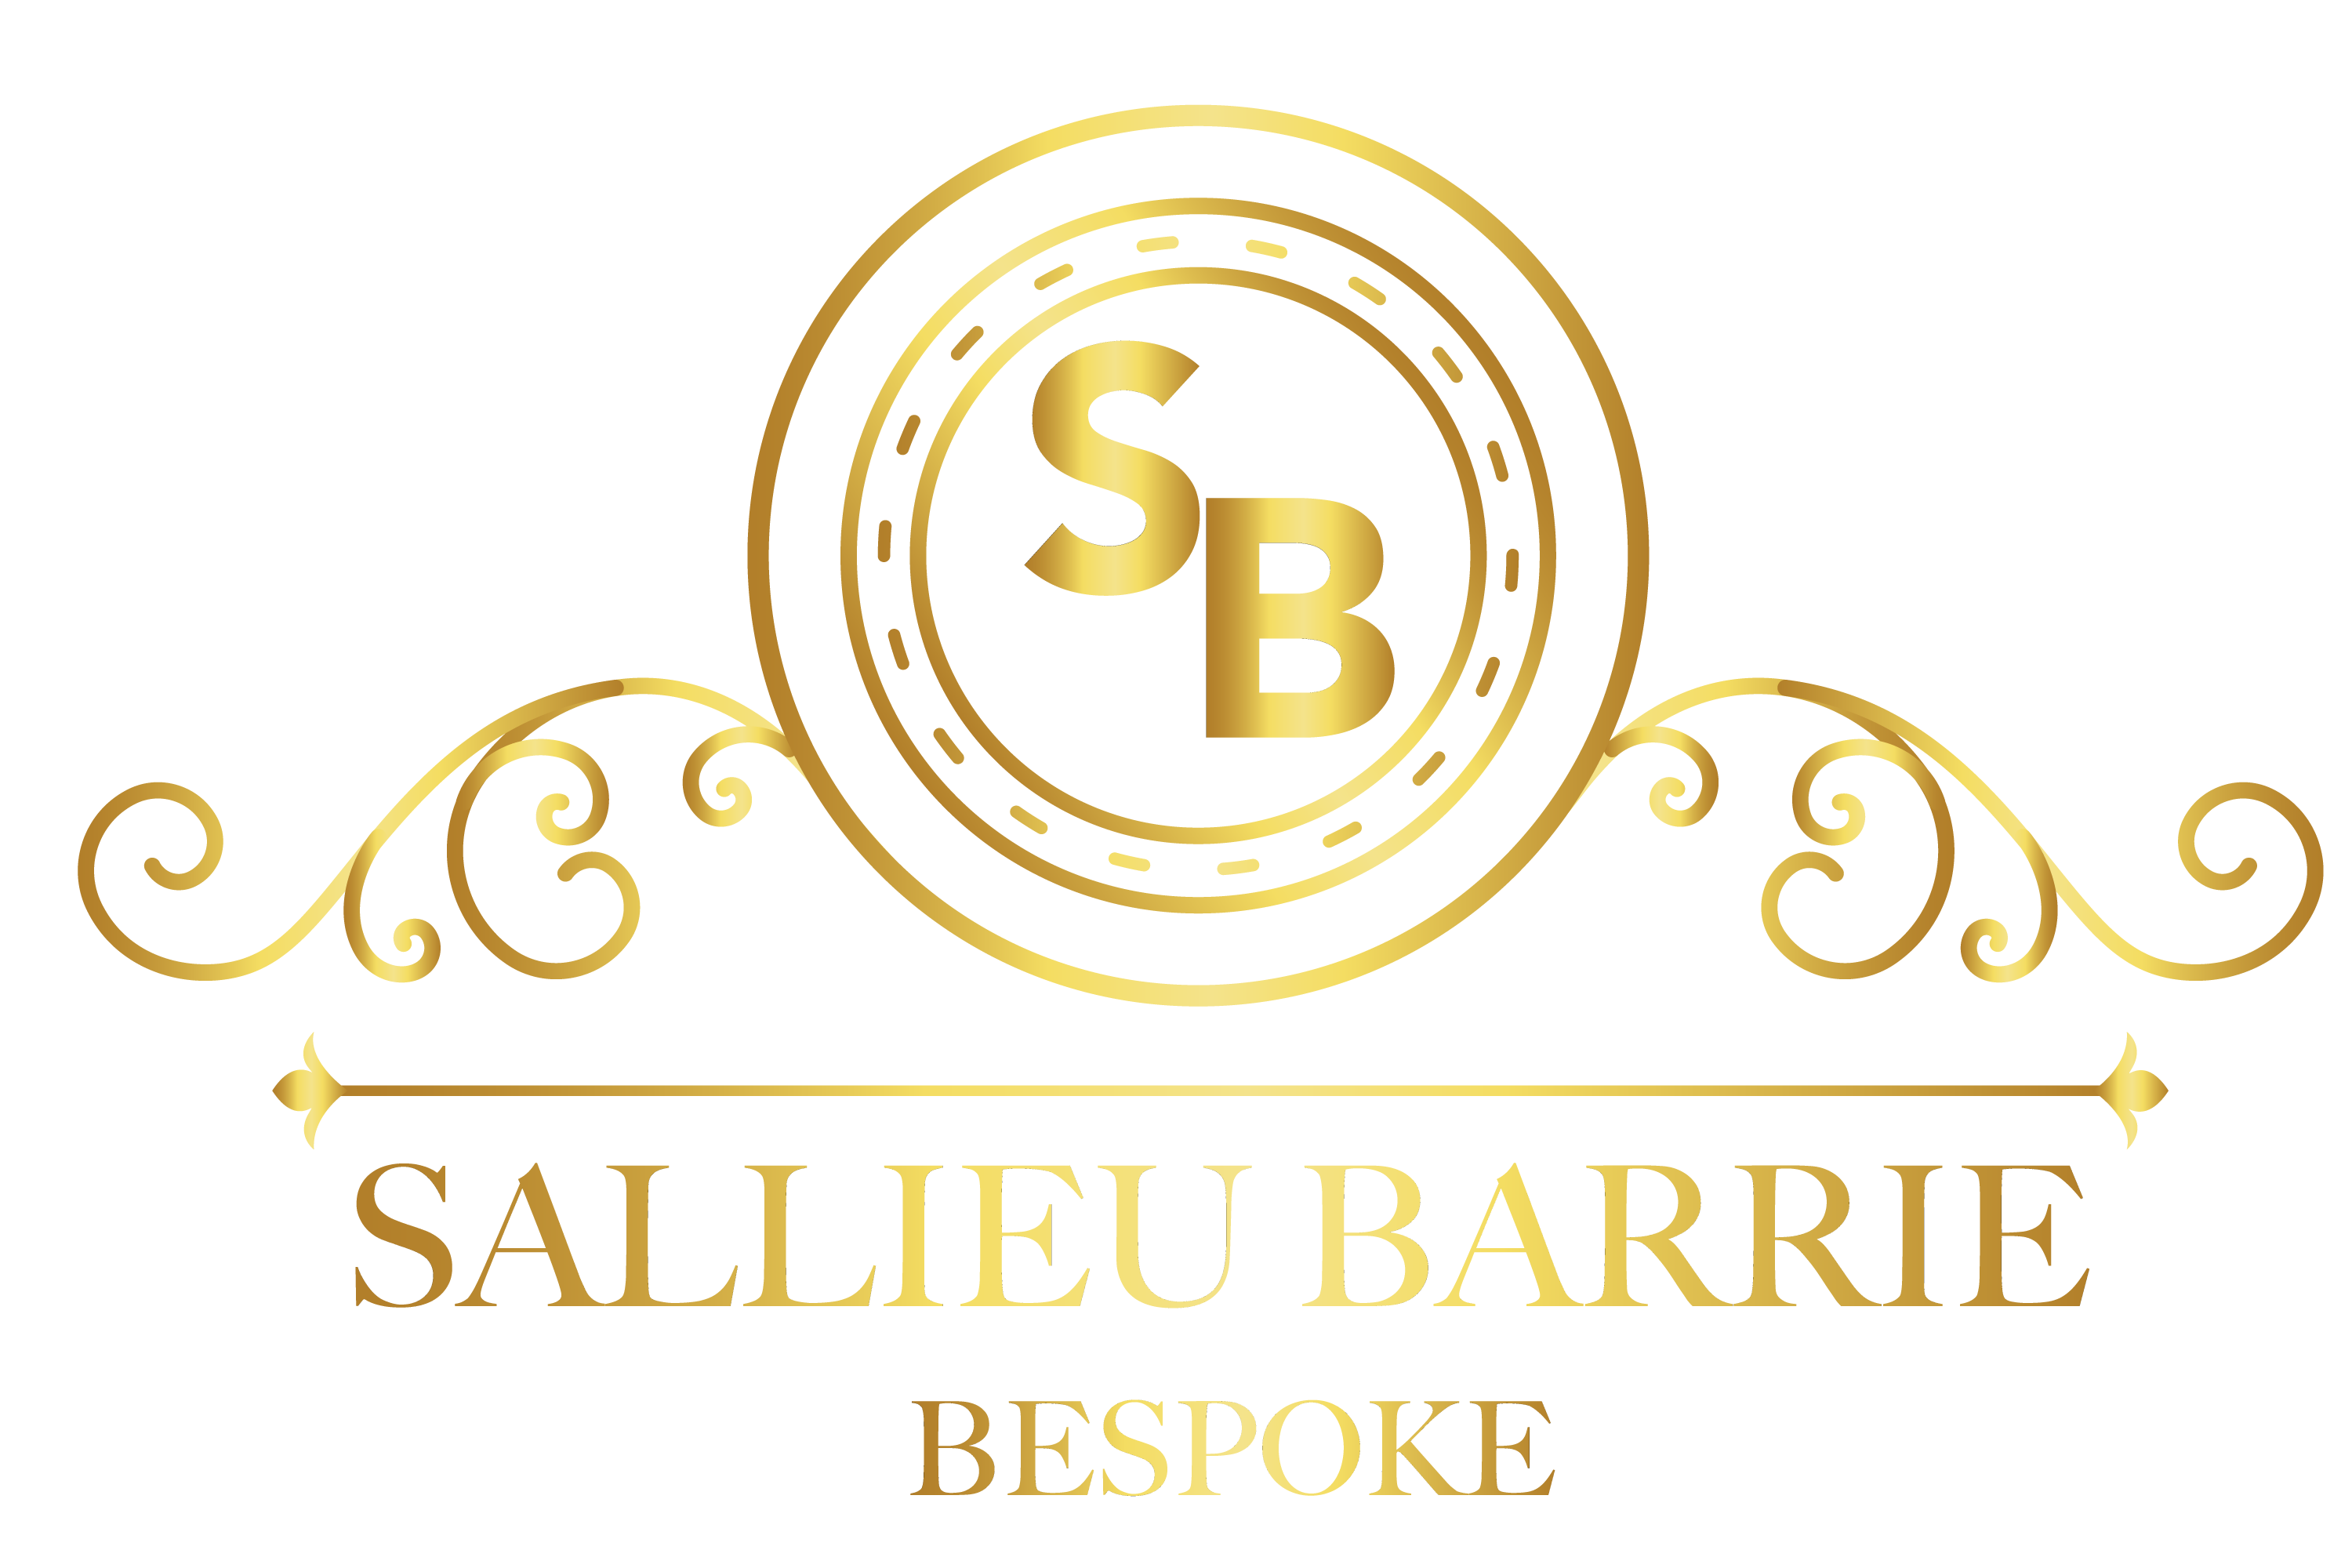 Sallieu Barrie Bespoke